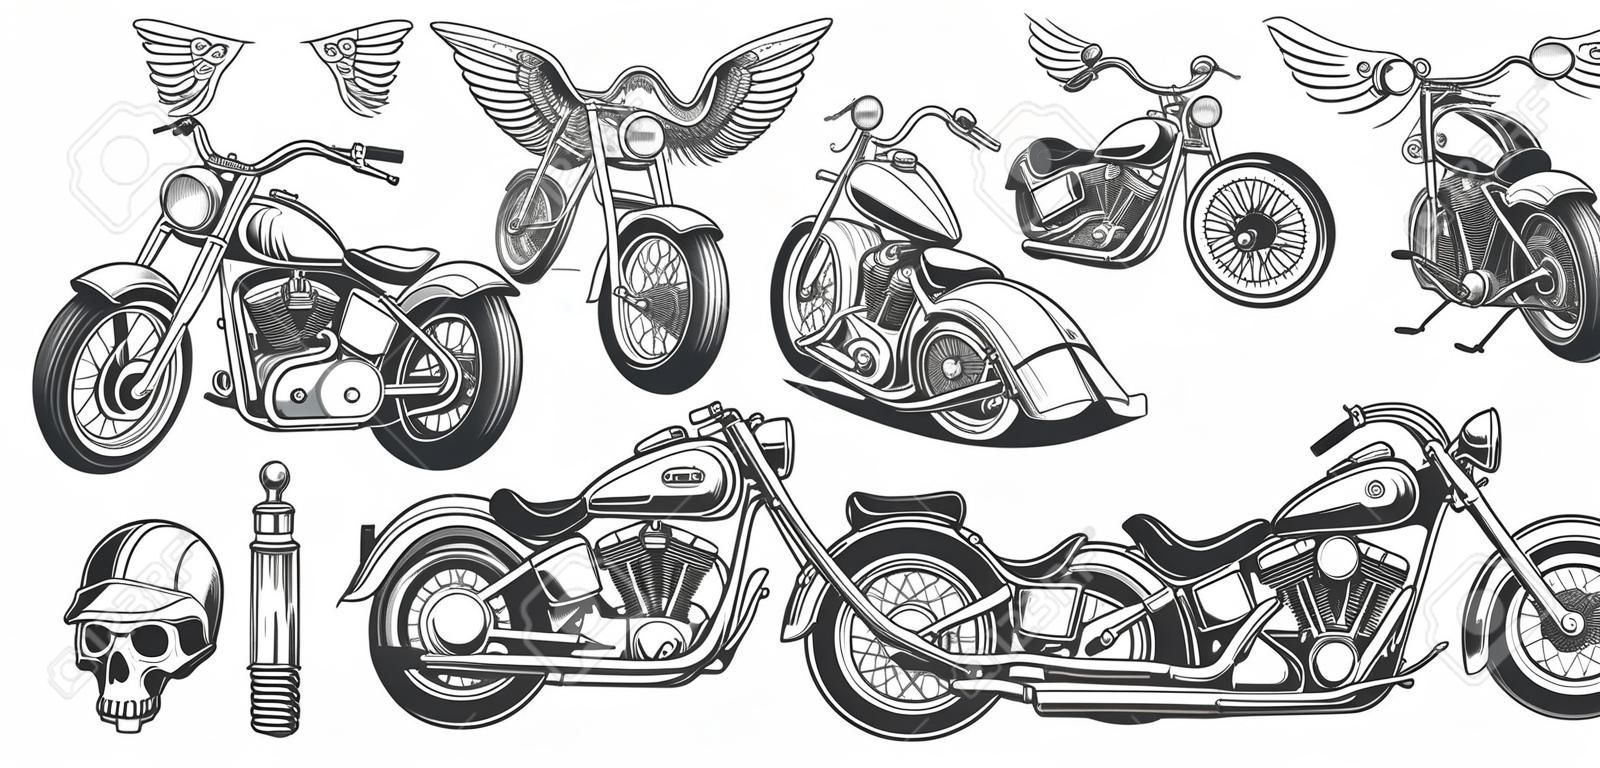 Ensemble d'illustrations, icônes de moto vintage dessinée à la main dans divers angles, crânes, ailes dans le style de la gravure. Classic chopper à l'encre. Impression, gravure, gabarit, élément de conception